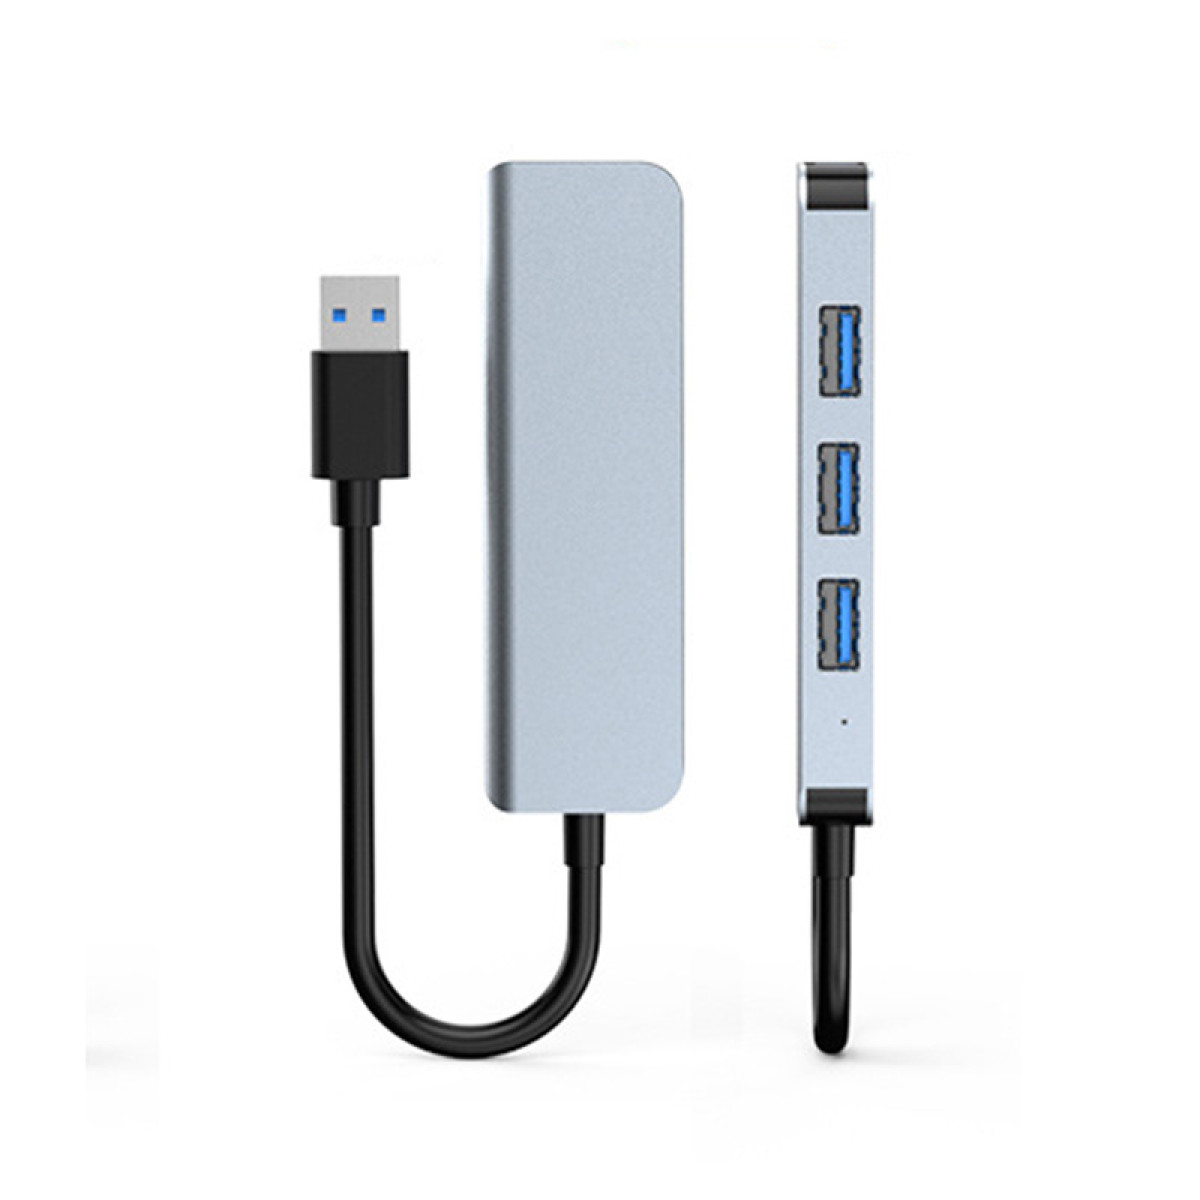 1 Silbergrau USB-Hub 3 INF USB2.0-Ports und USB-Hub, USB3.0-Port mit